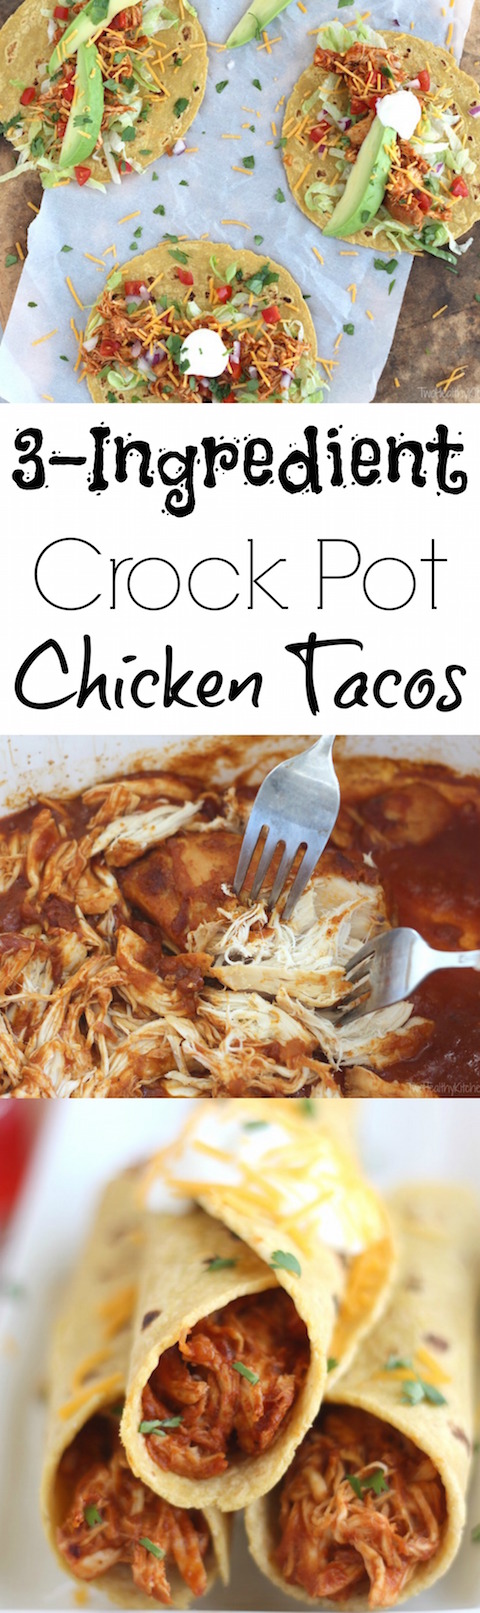 3-Ingredient Crock-Pot Chicken Tacos Recipe {www.TwoHealthyKitchens.com}